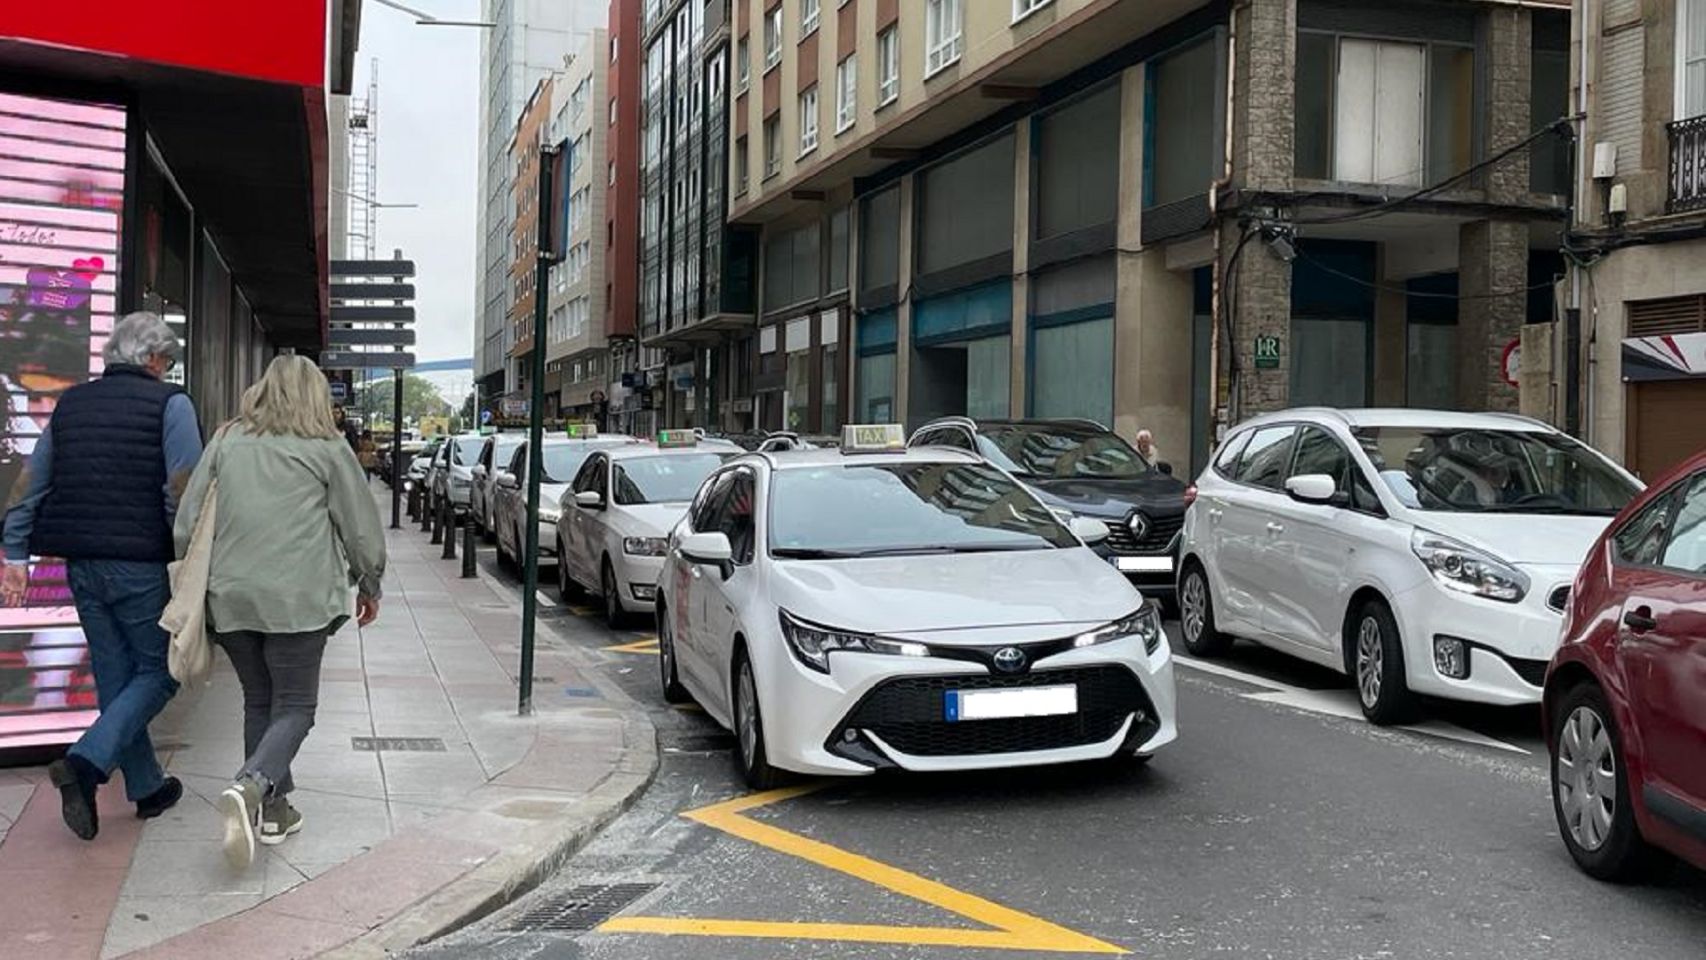 Parada de taxis en la avenida de Rubine de A Coruña.